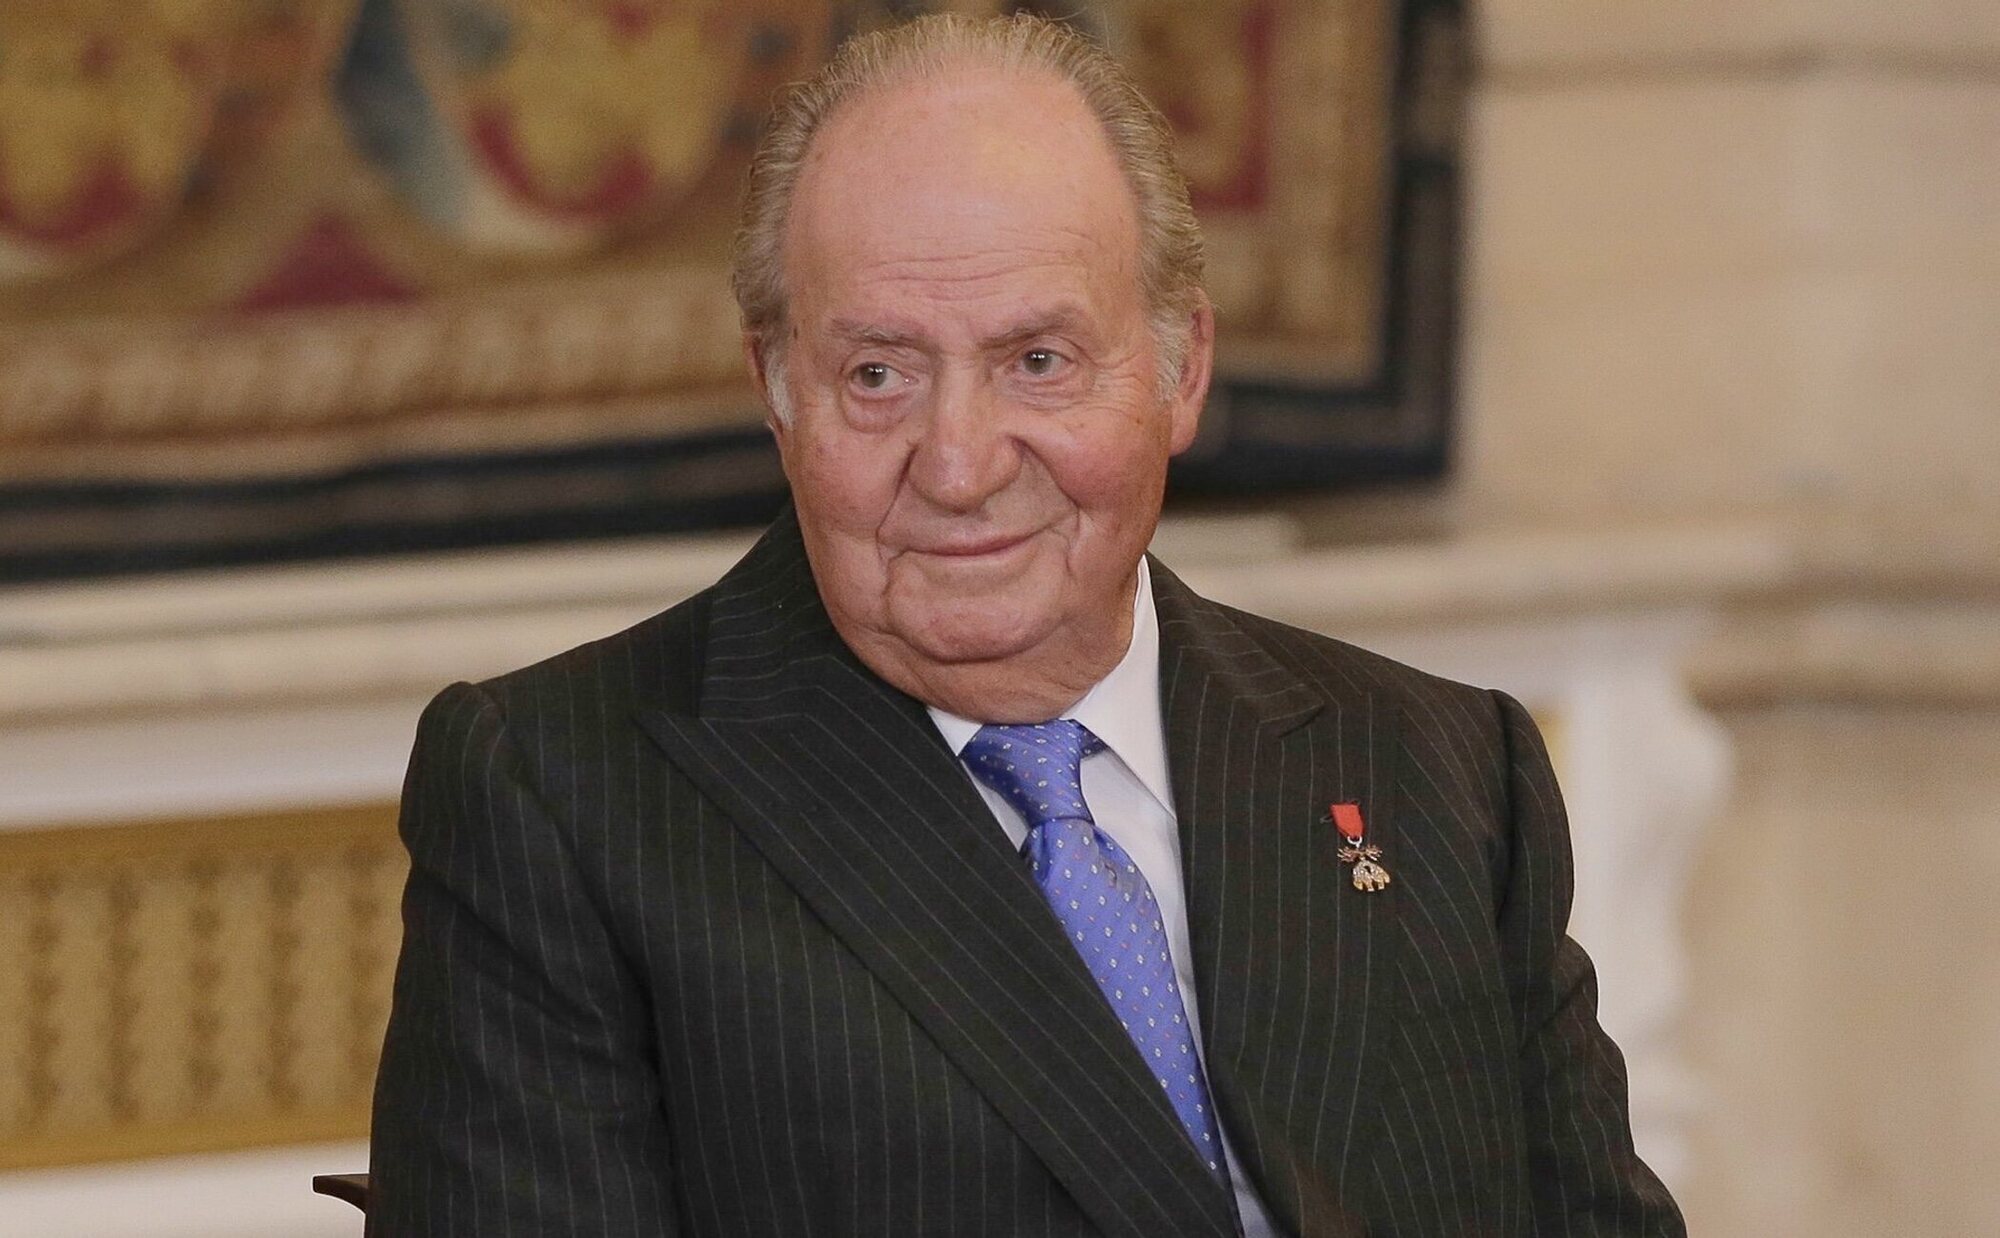 Sale a la luz quiénes tuvieron la idea de la fiesta por el 86 cumpleaños del Rey Juan Carlos en Abu Dabi y quién lo pagó todo